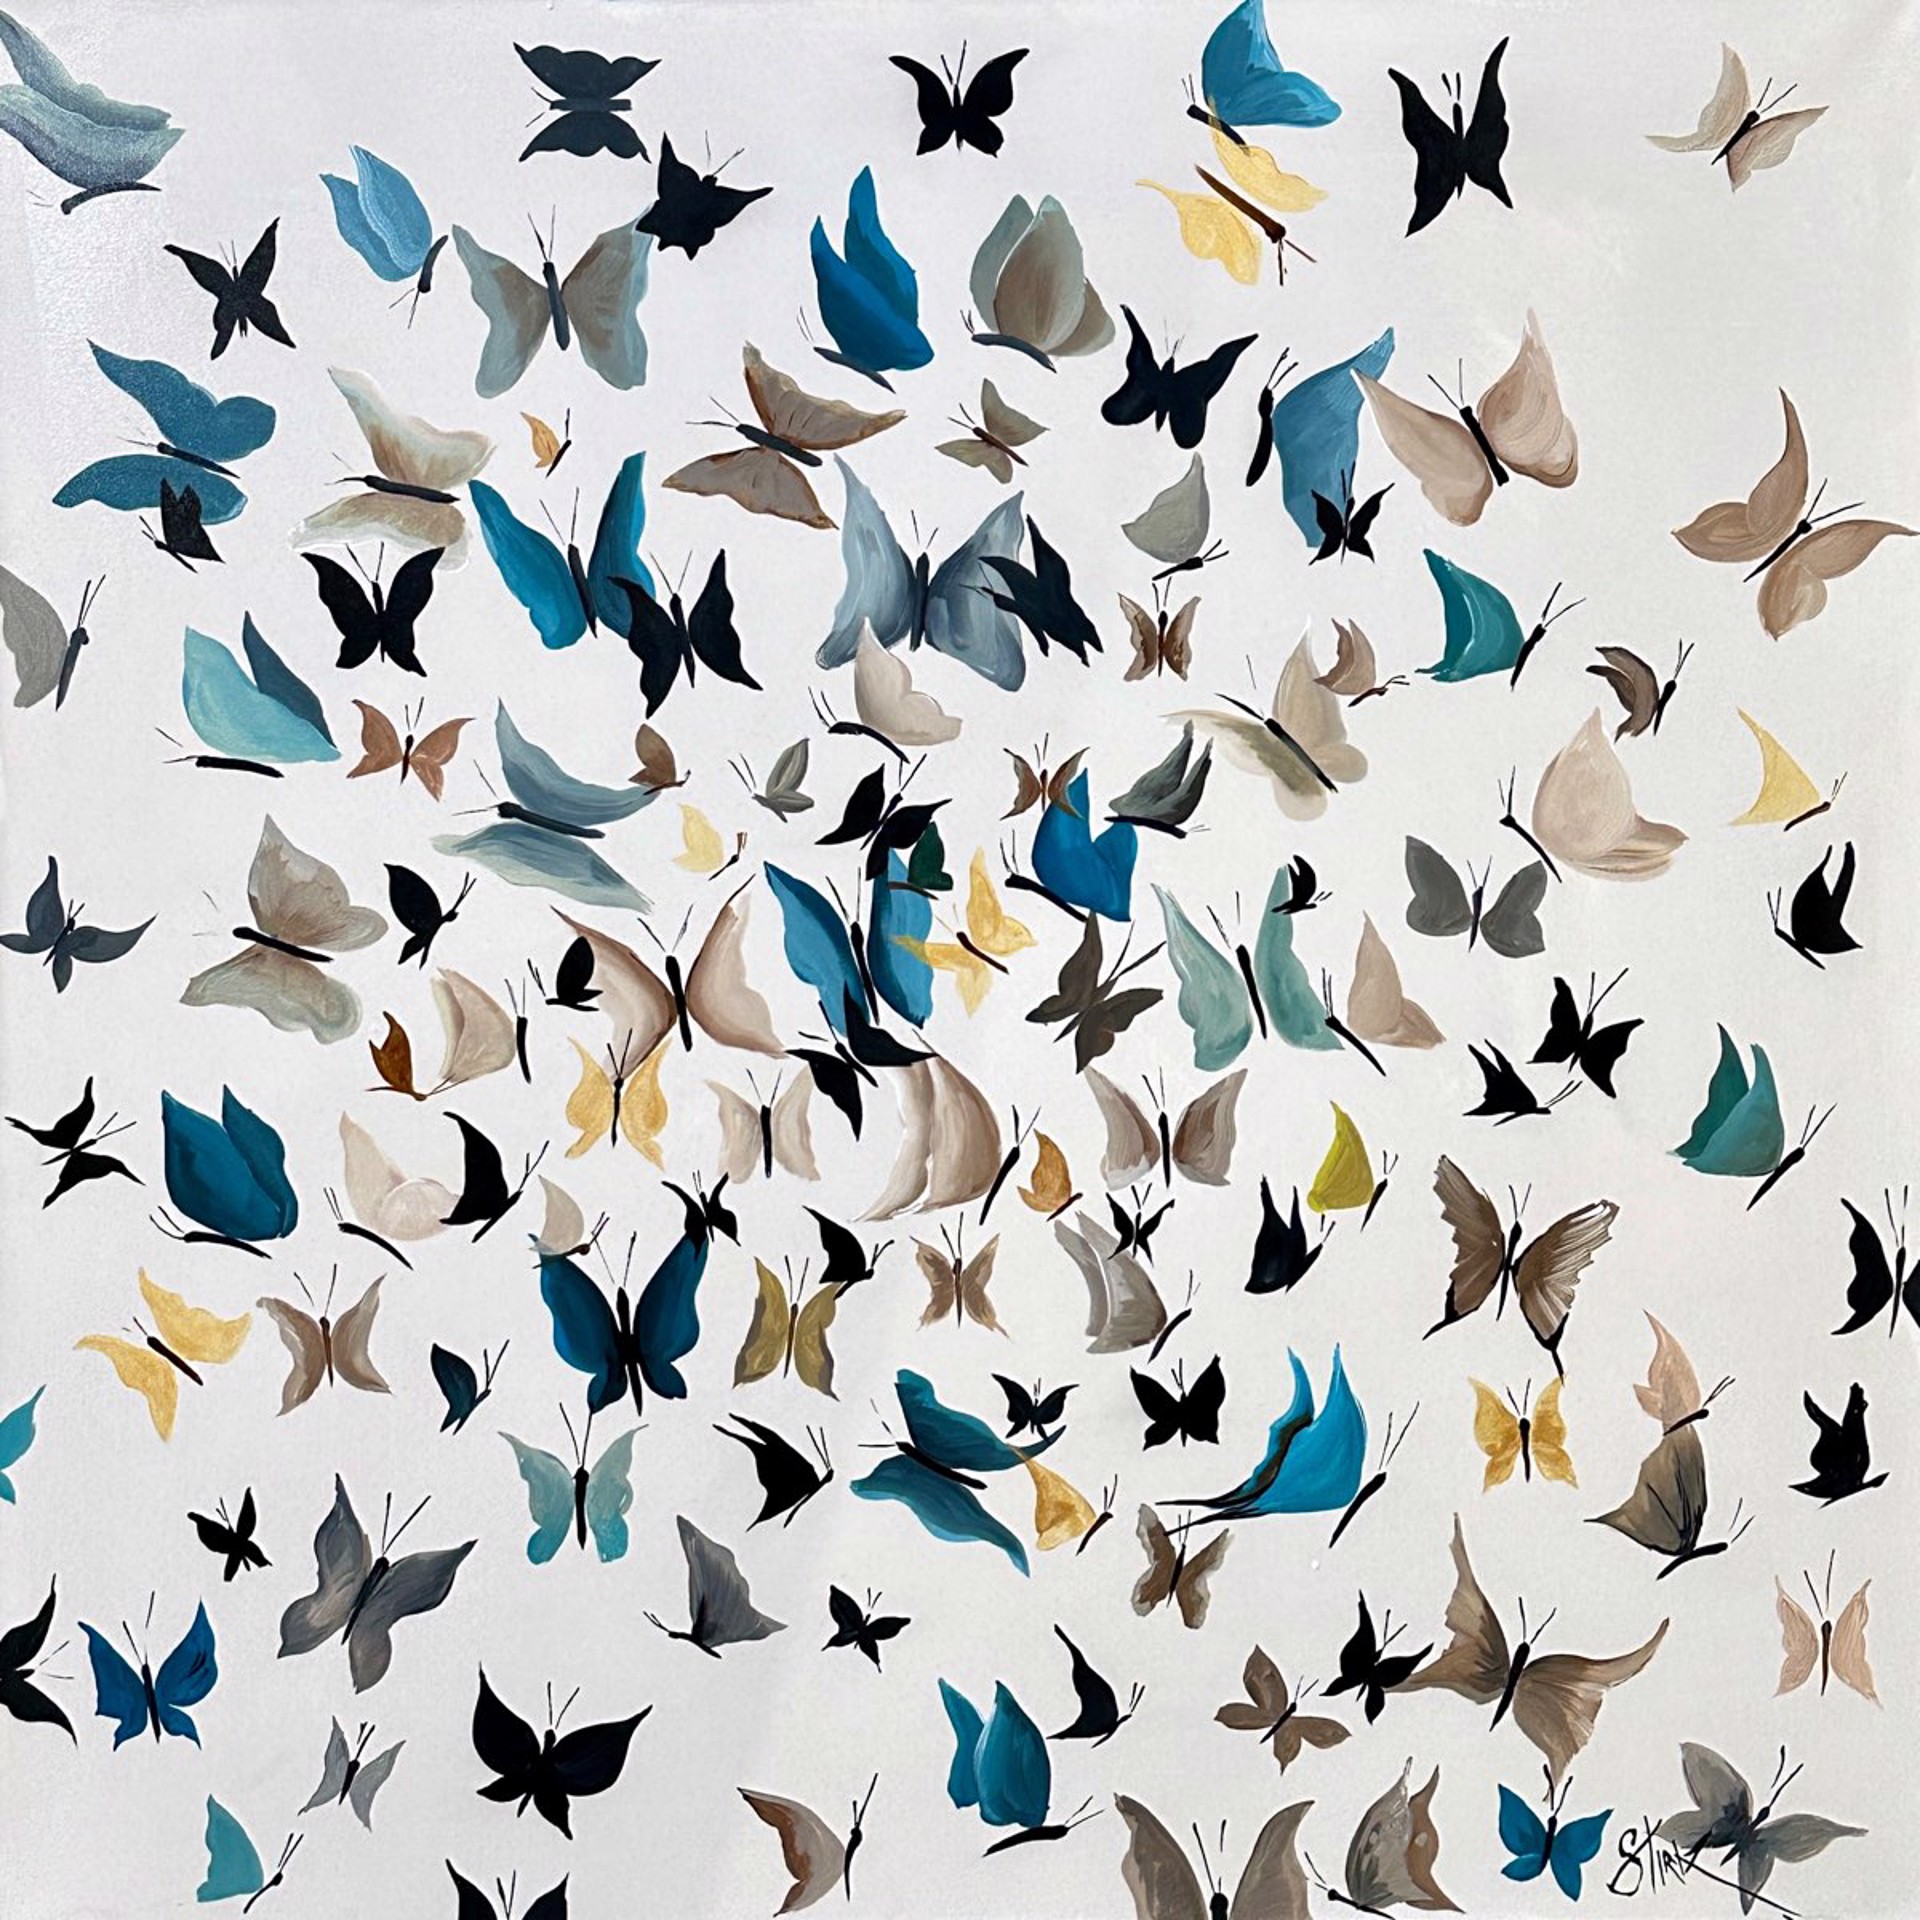 Beautyflies by Lorenzo Stirk